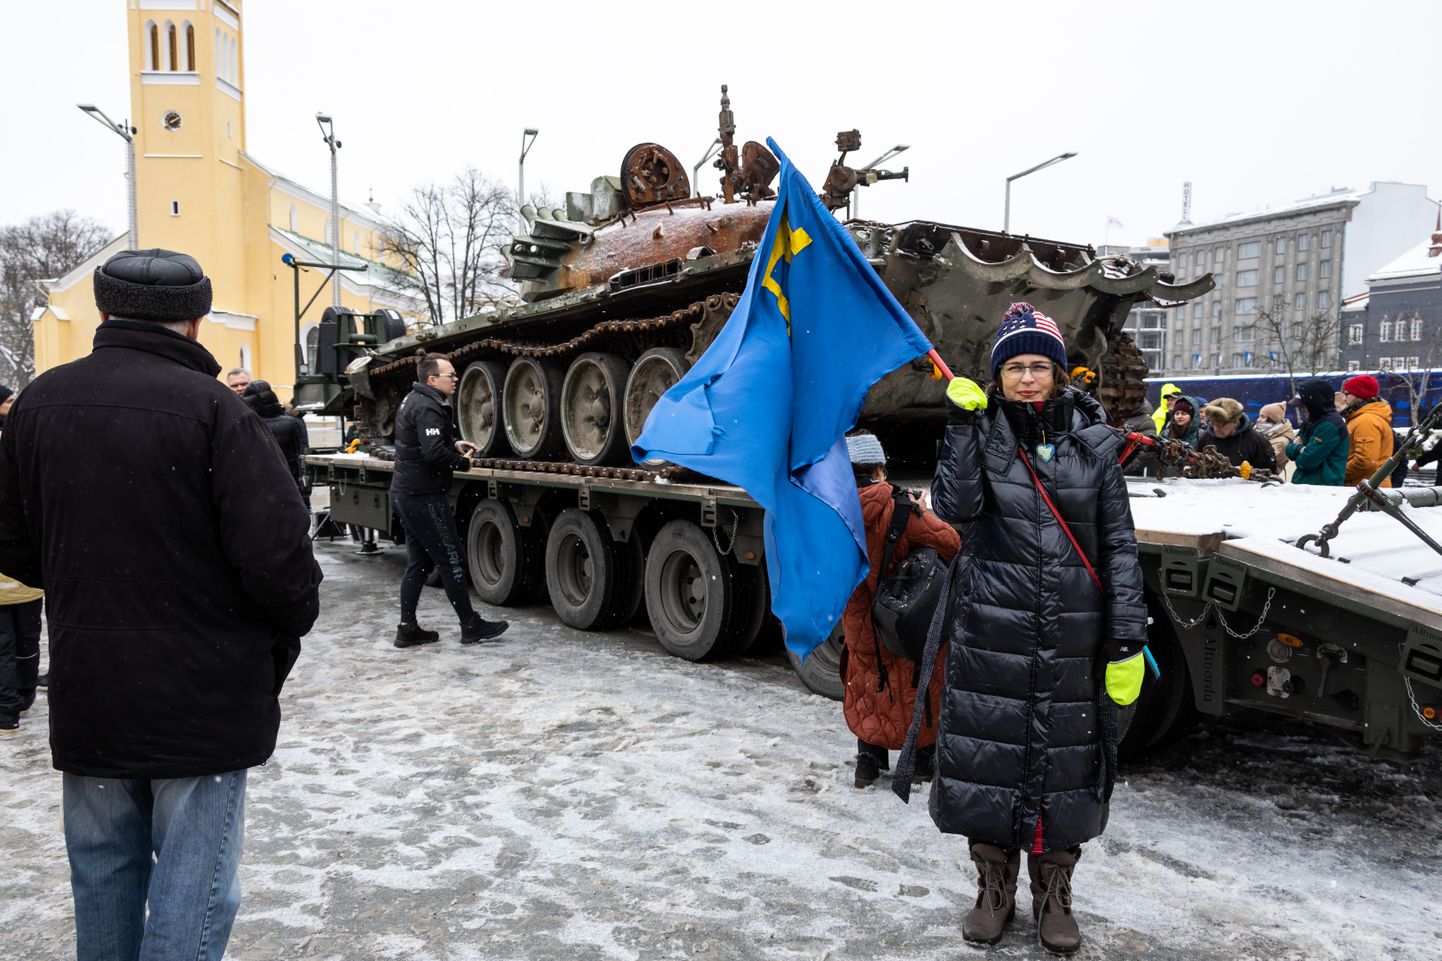 Разгромленный украинскими защитниками российский танк на площади Вабадузе в Таллинне.